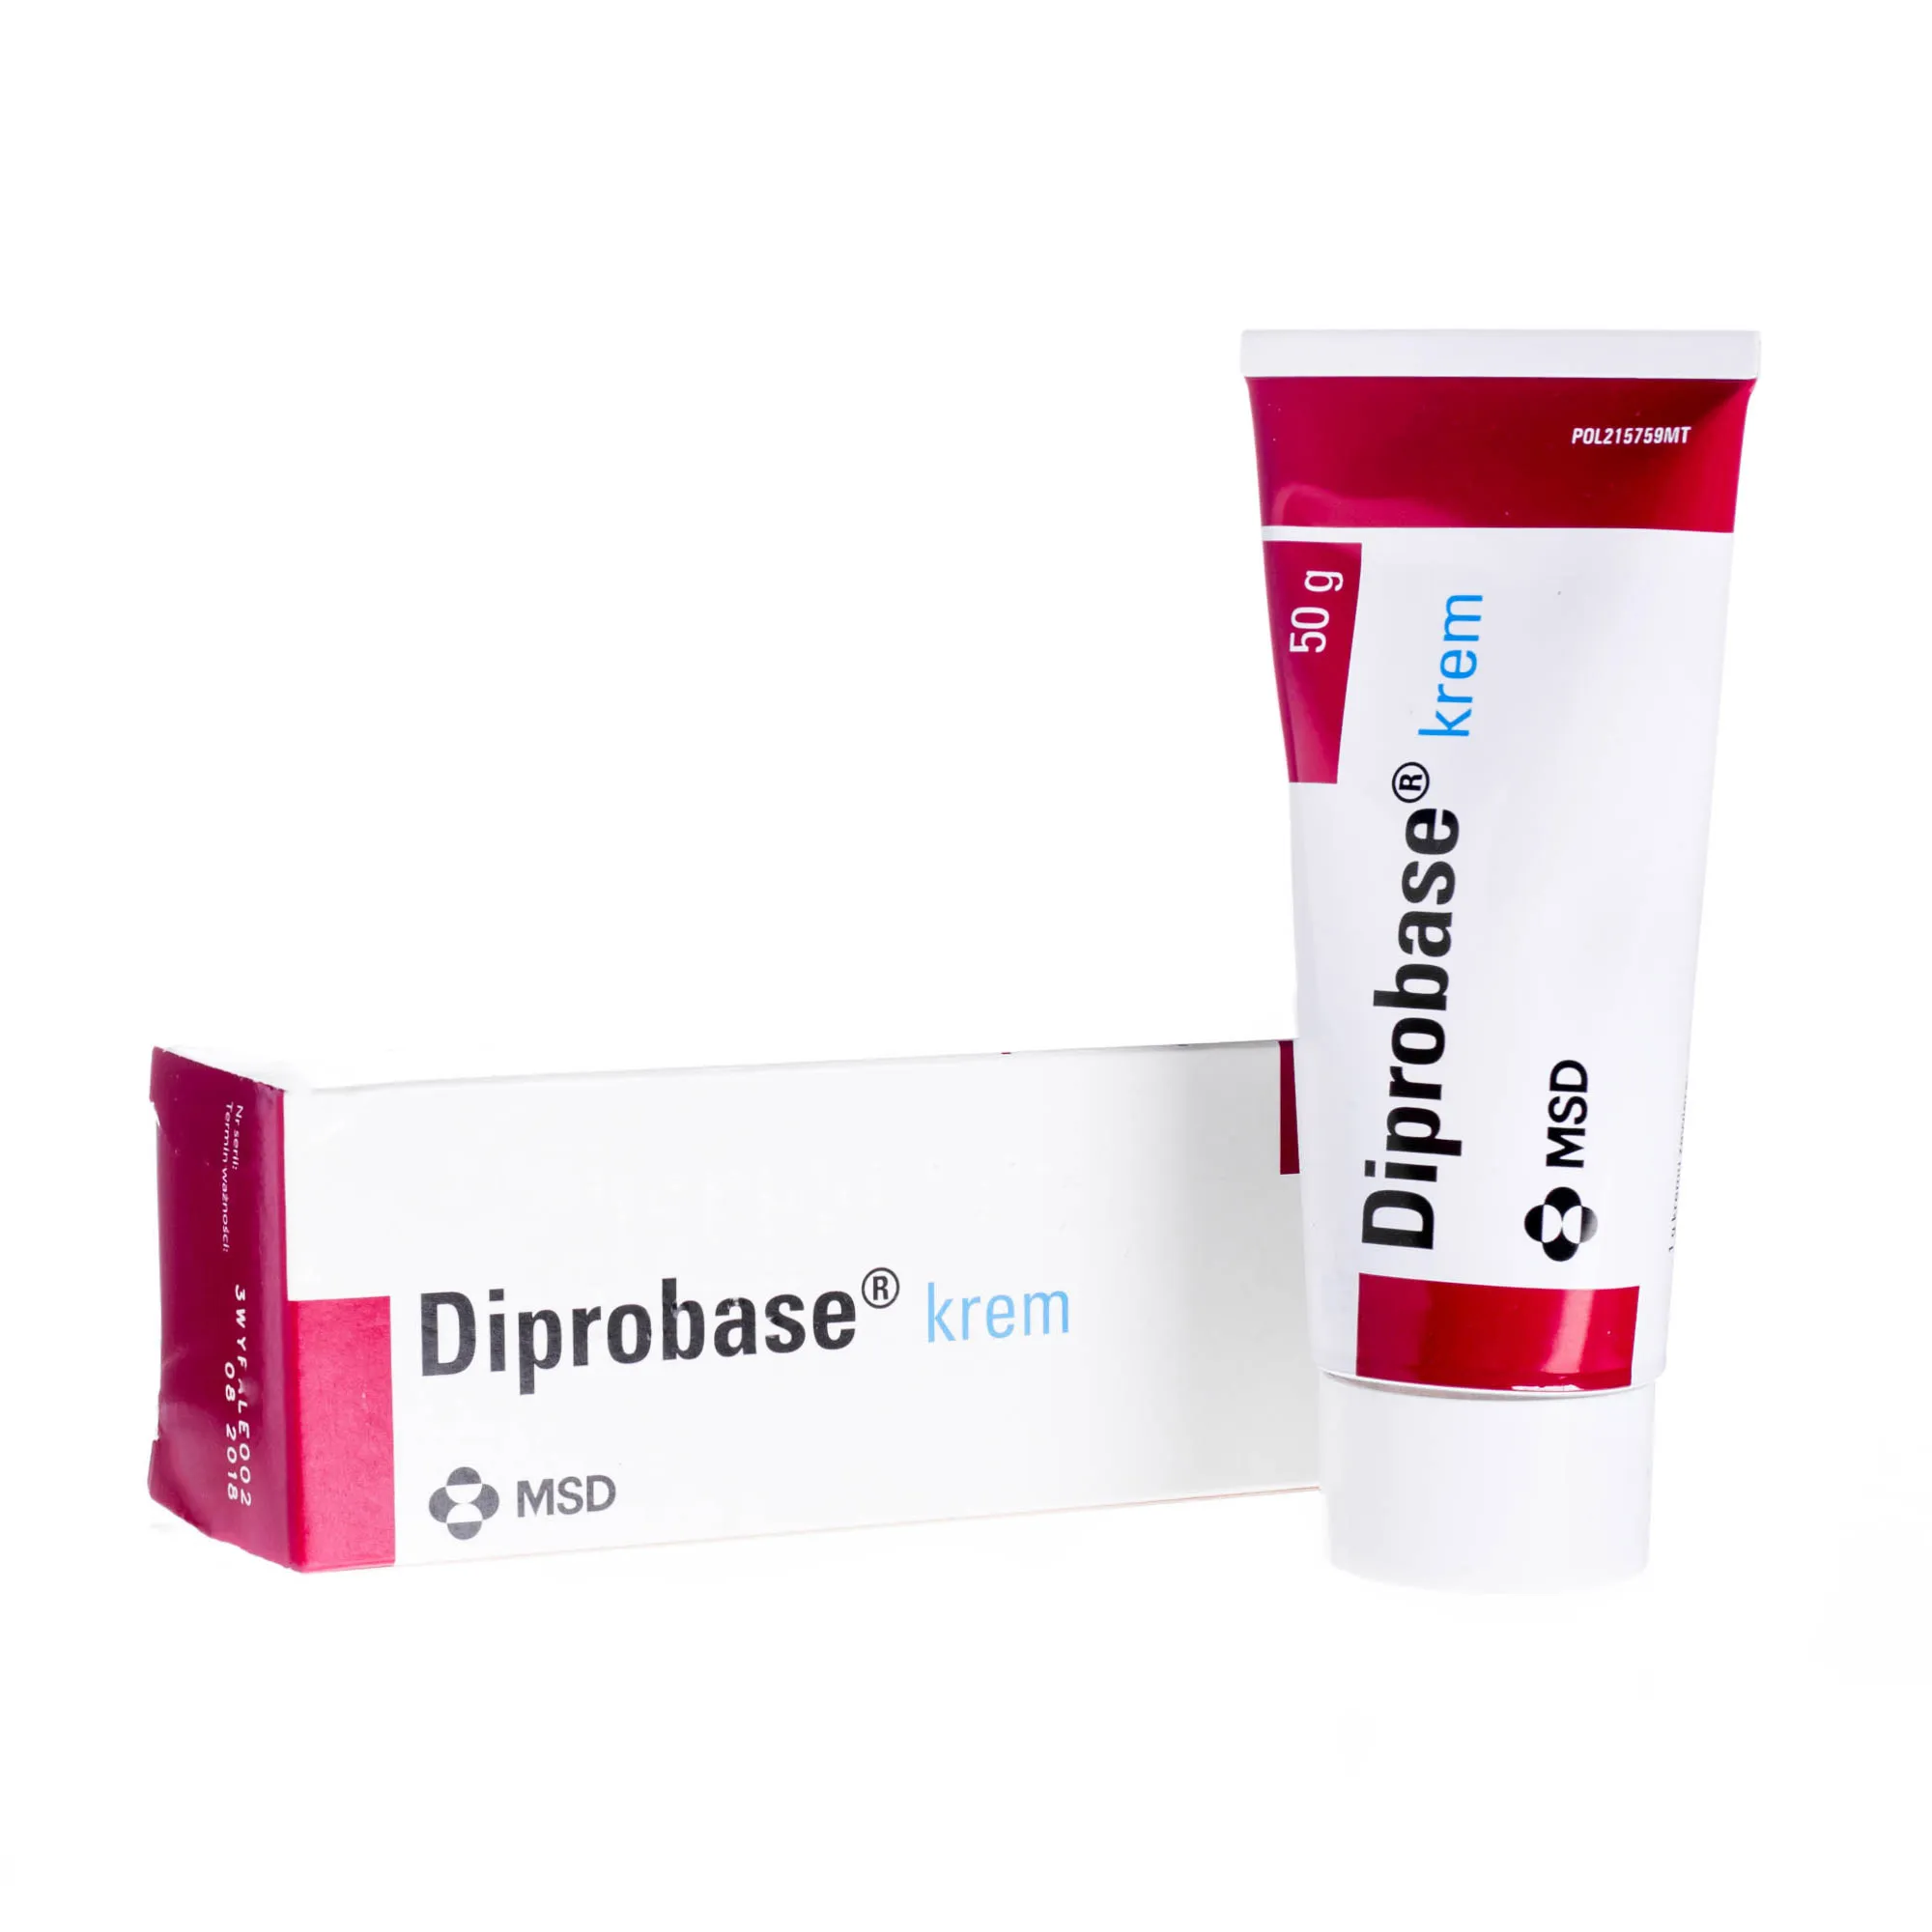 Diprobase krem - lek w postaci kremu do stosowania miejscowego na skórę, 50 g